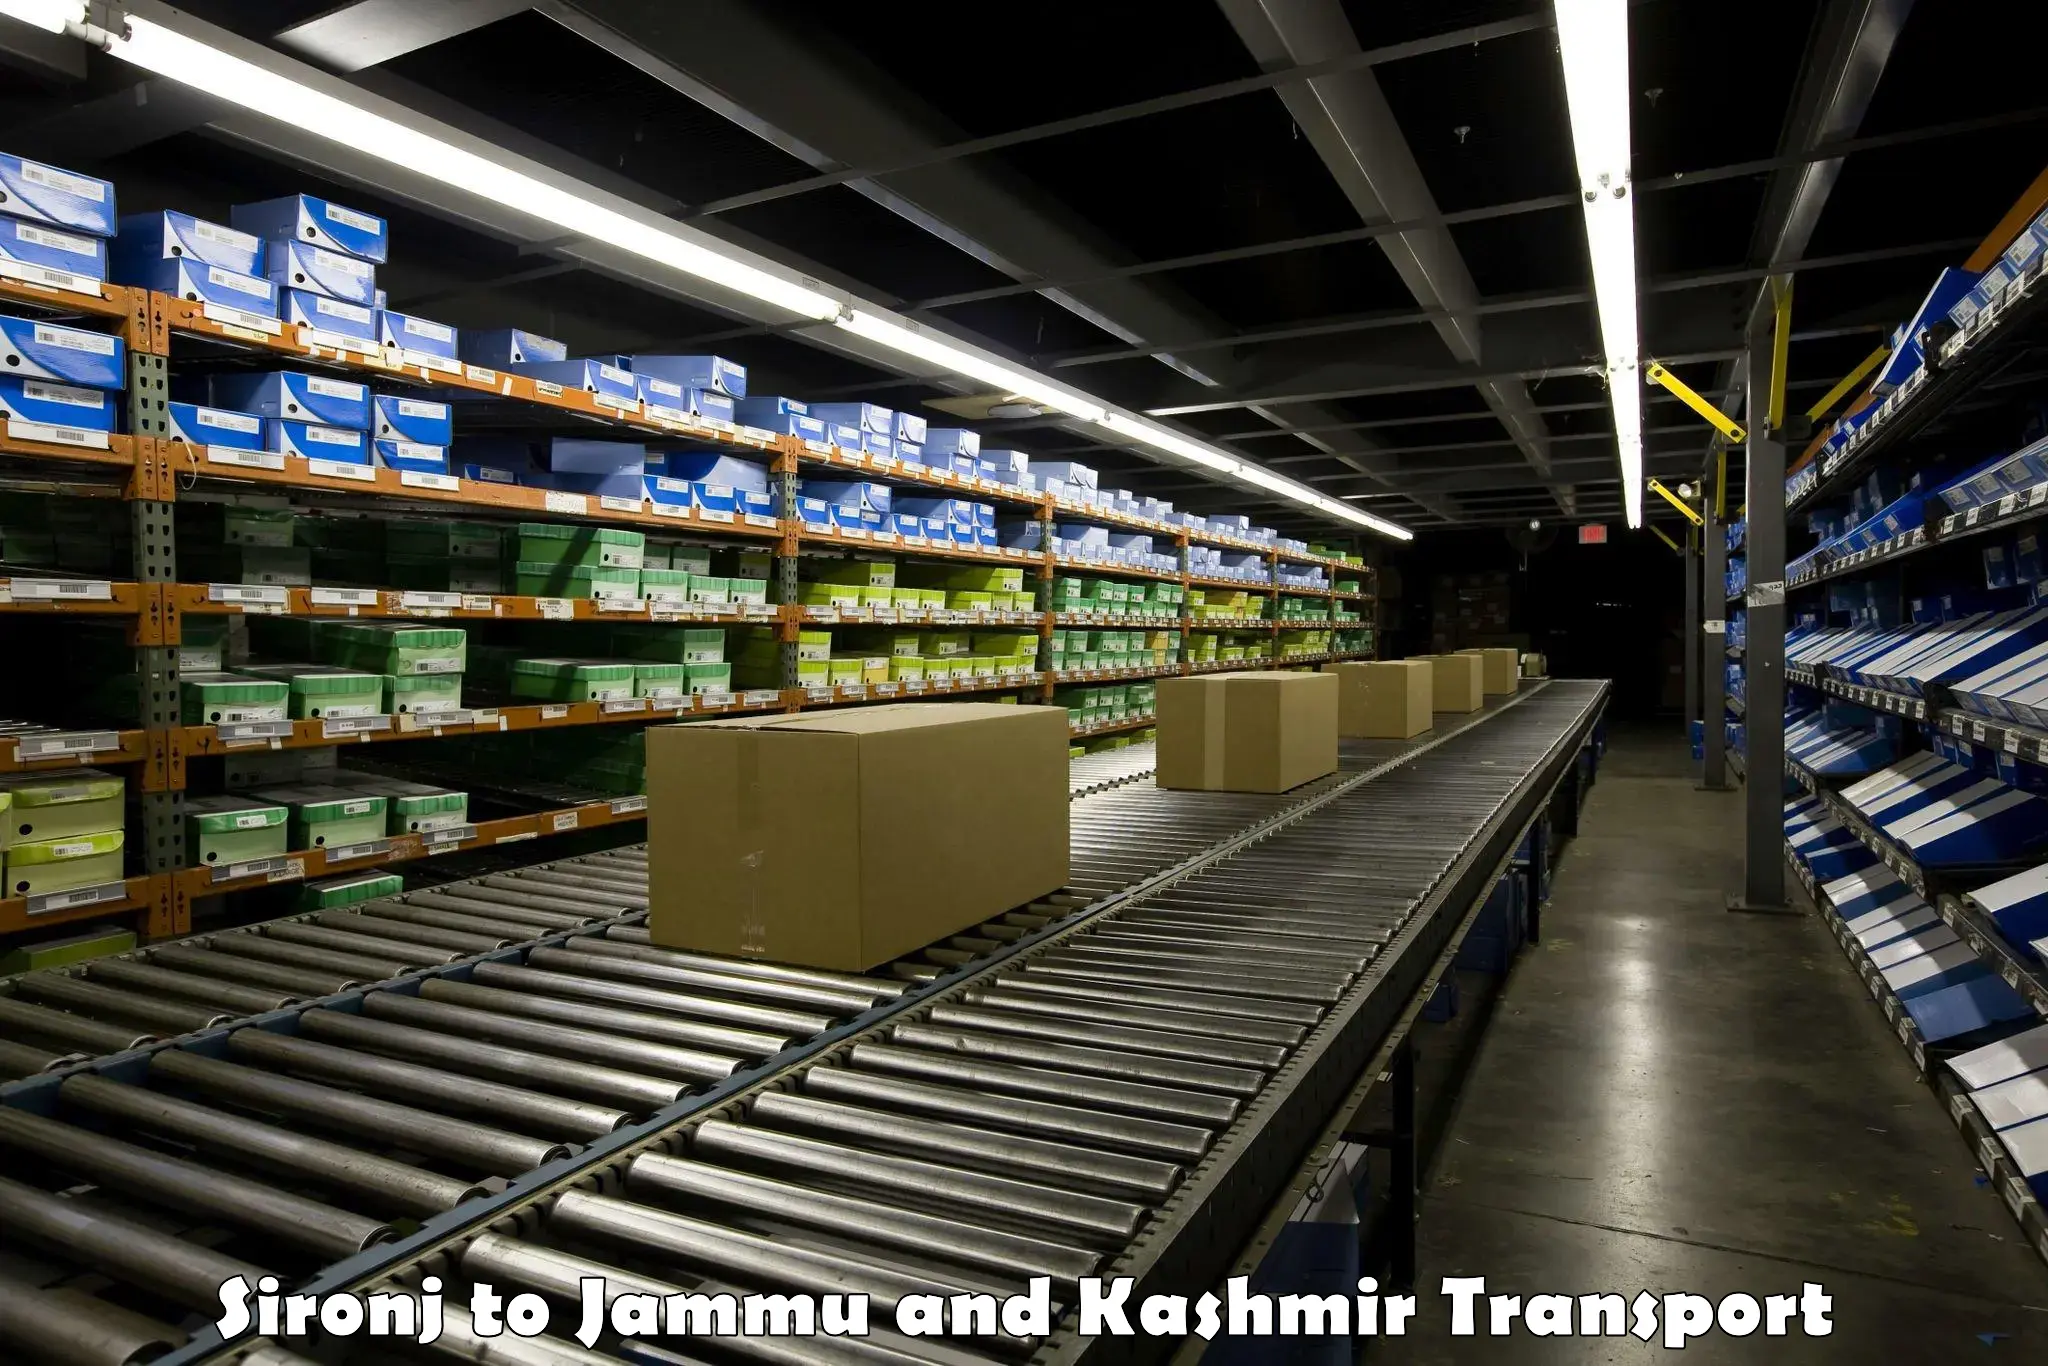 Bike shipping service Sironj to Jammu and Kashmir